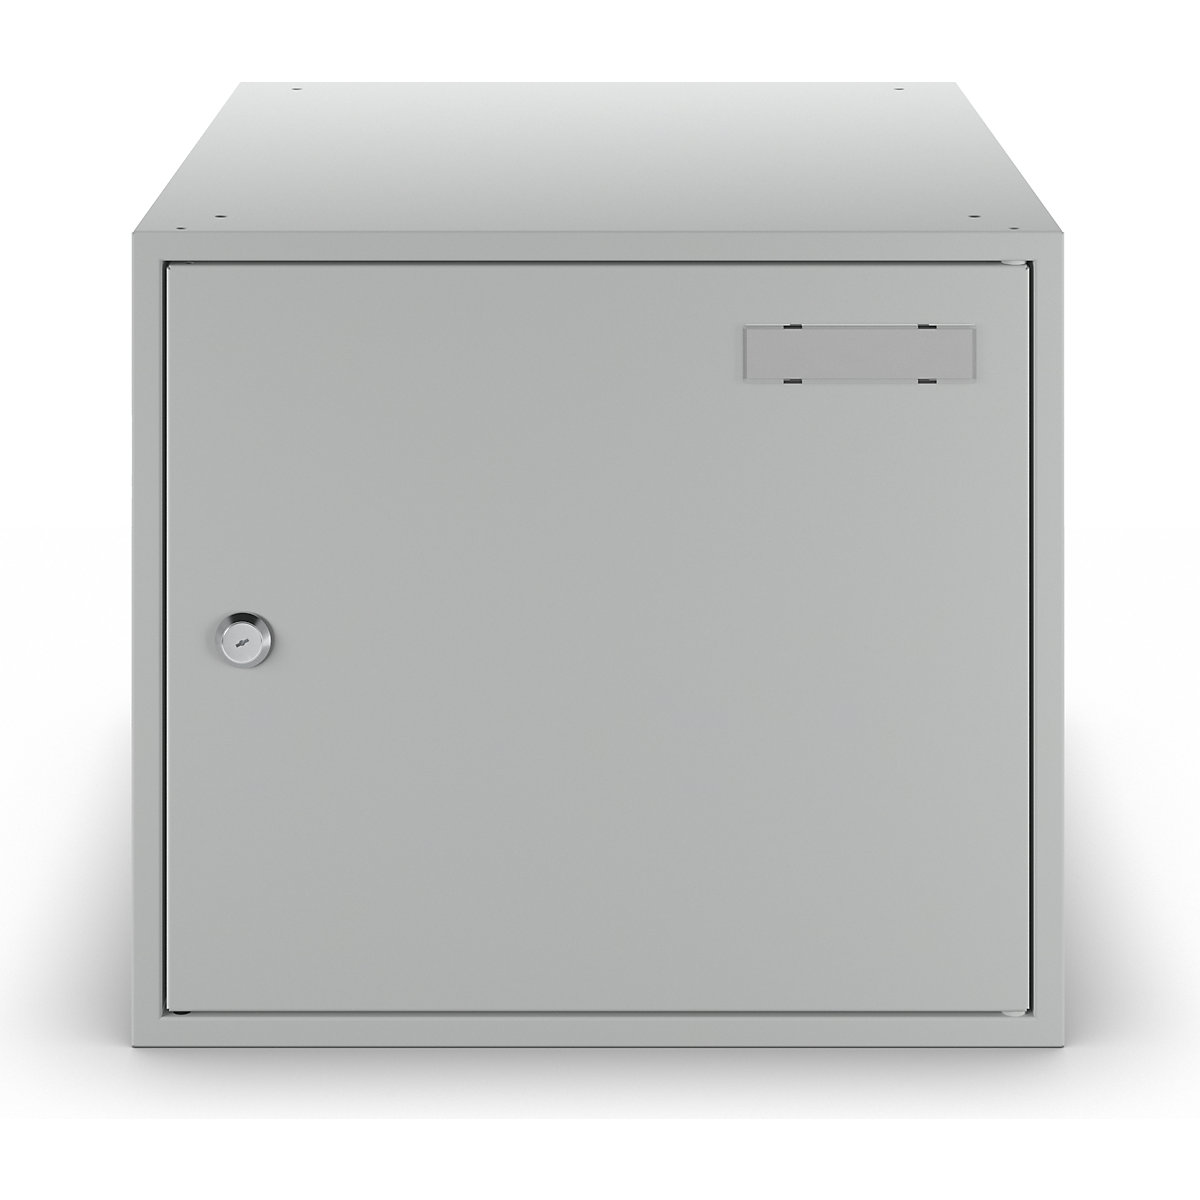 Cube locker, anti bacterial – eurokraft basic